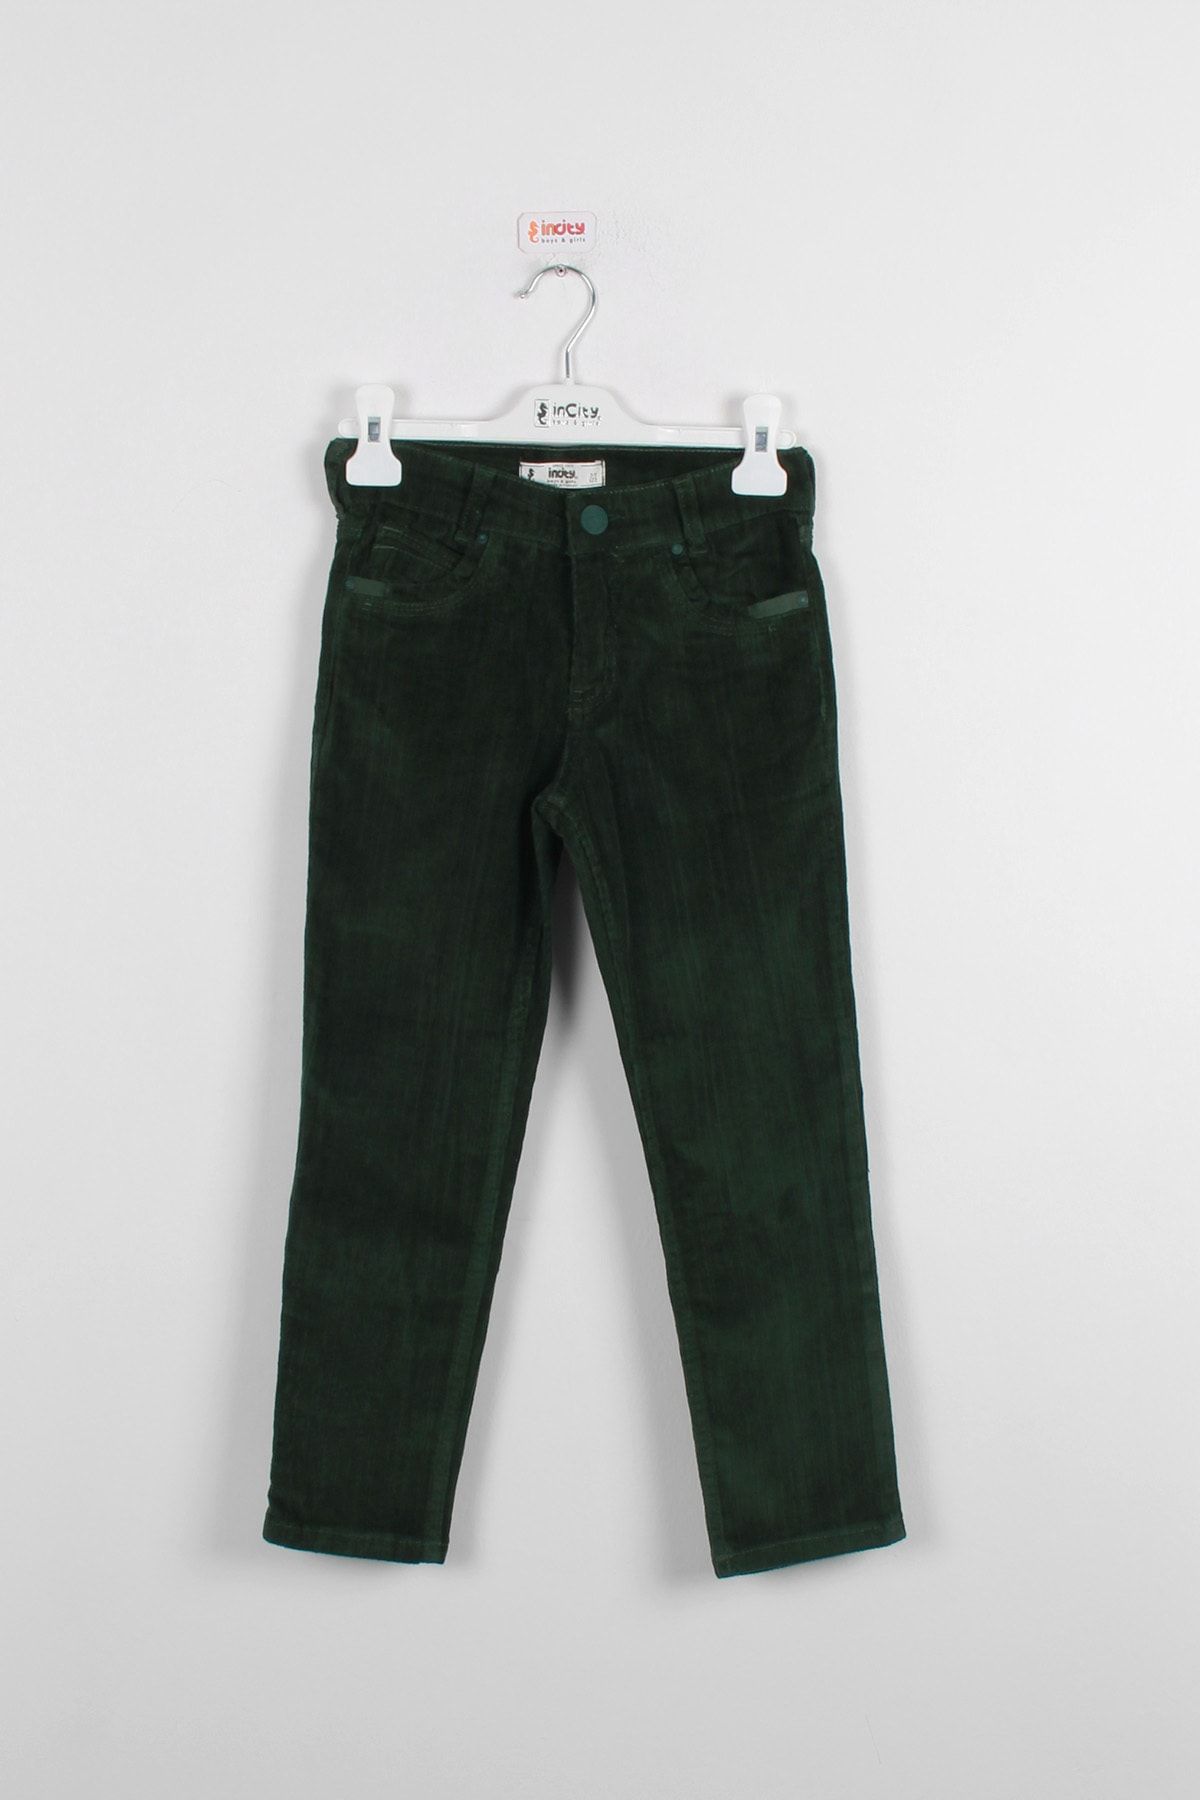 incity Erkek Çocuk Yeşil Kadife Pantolon